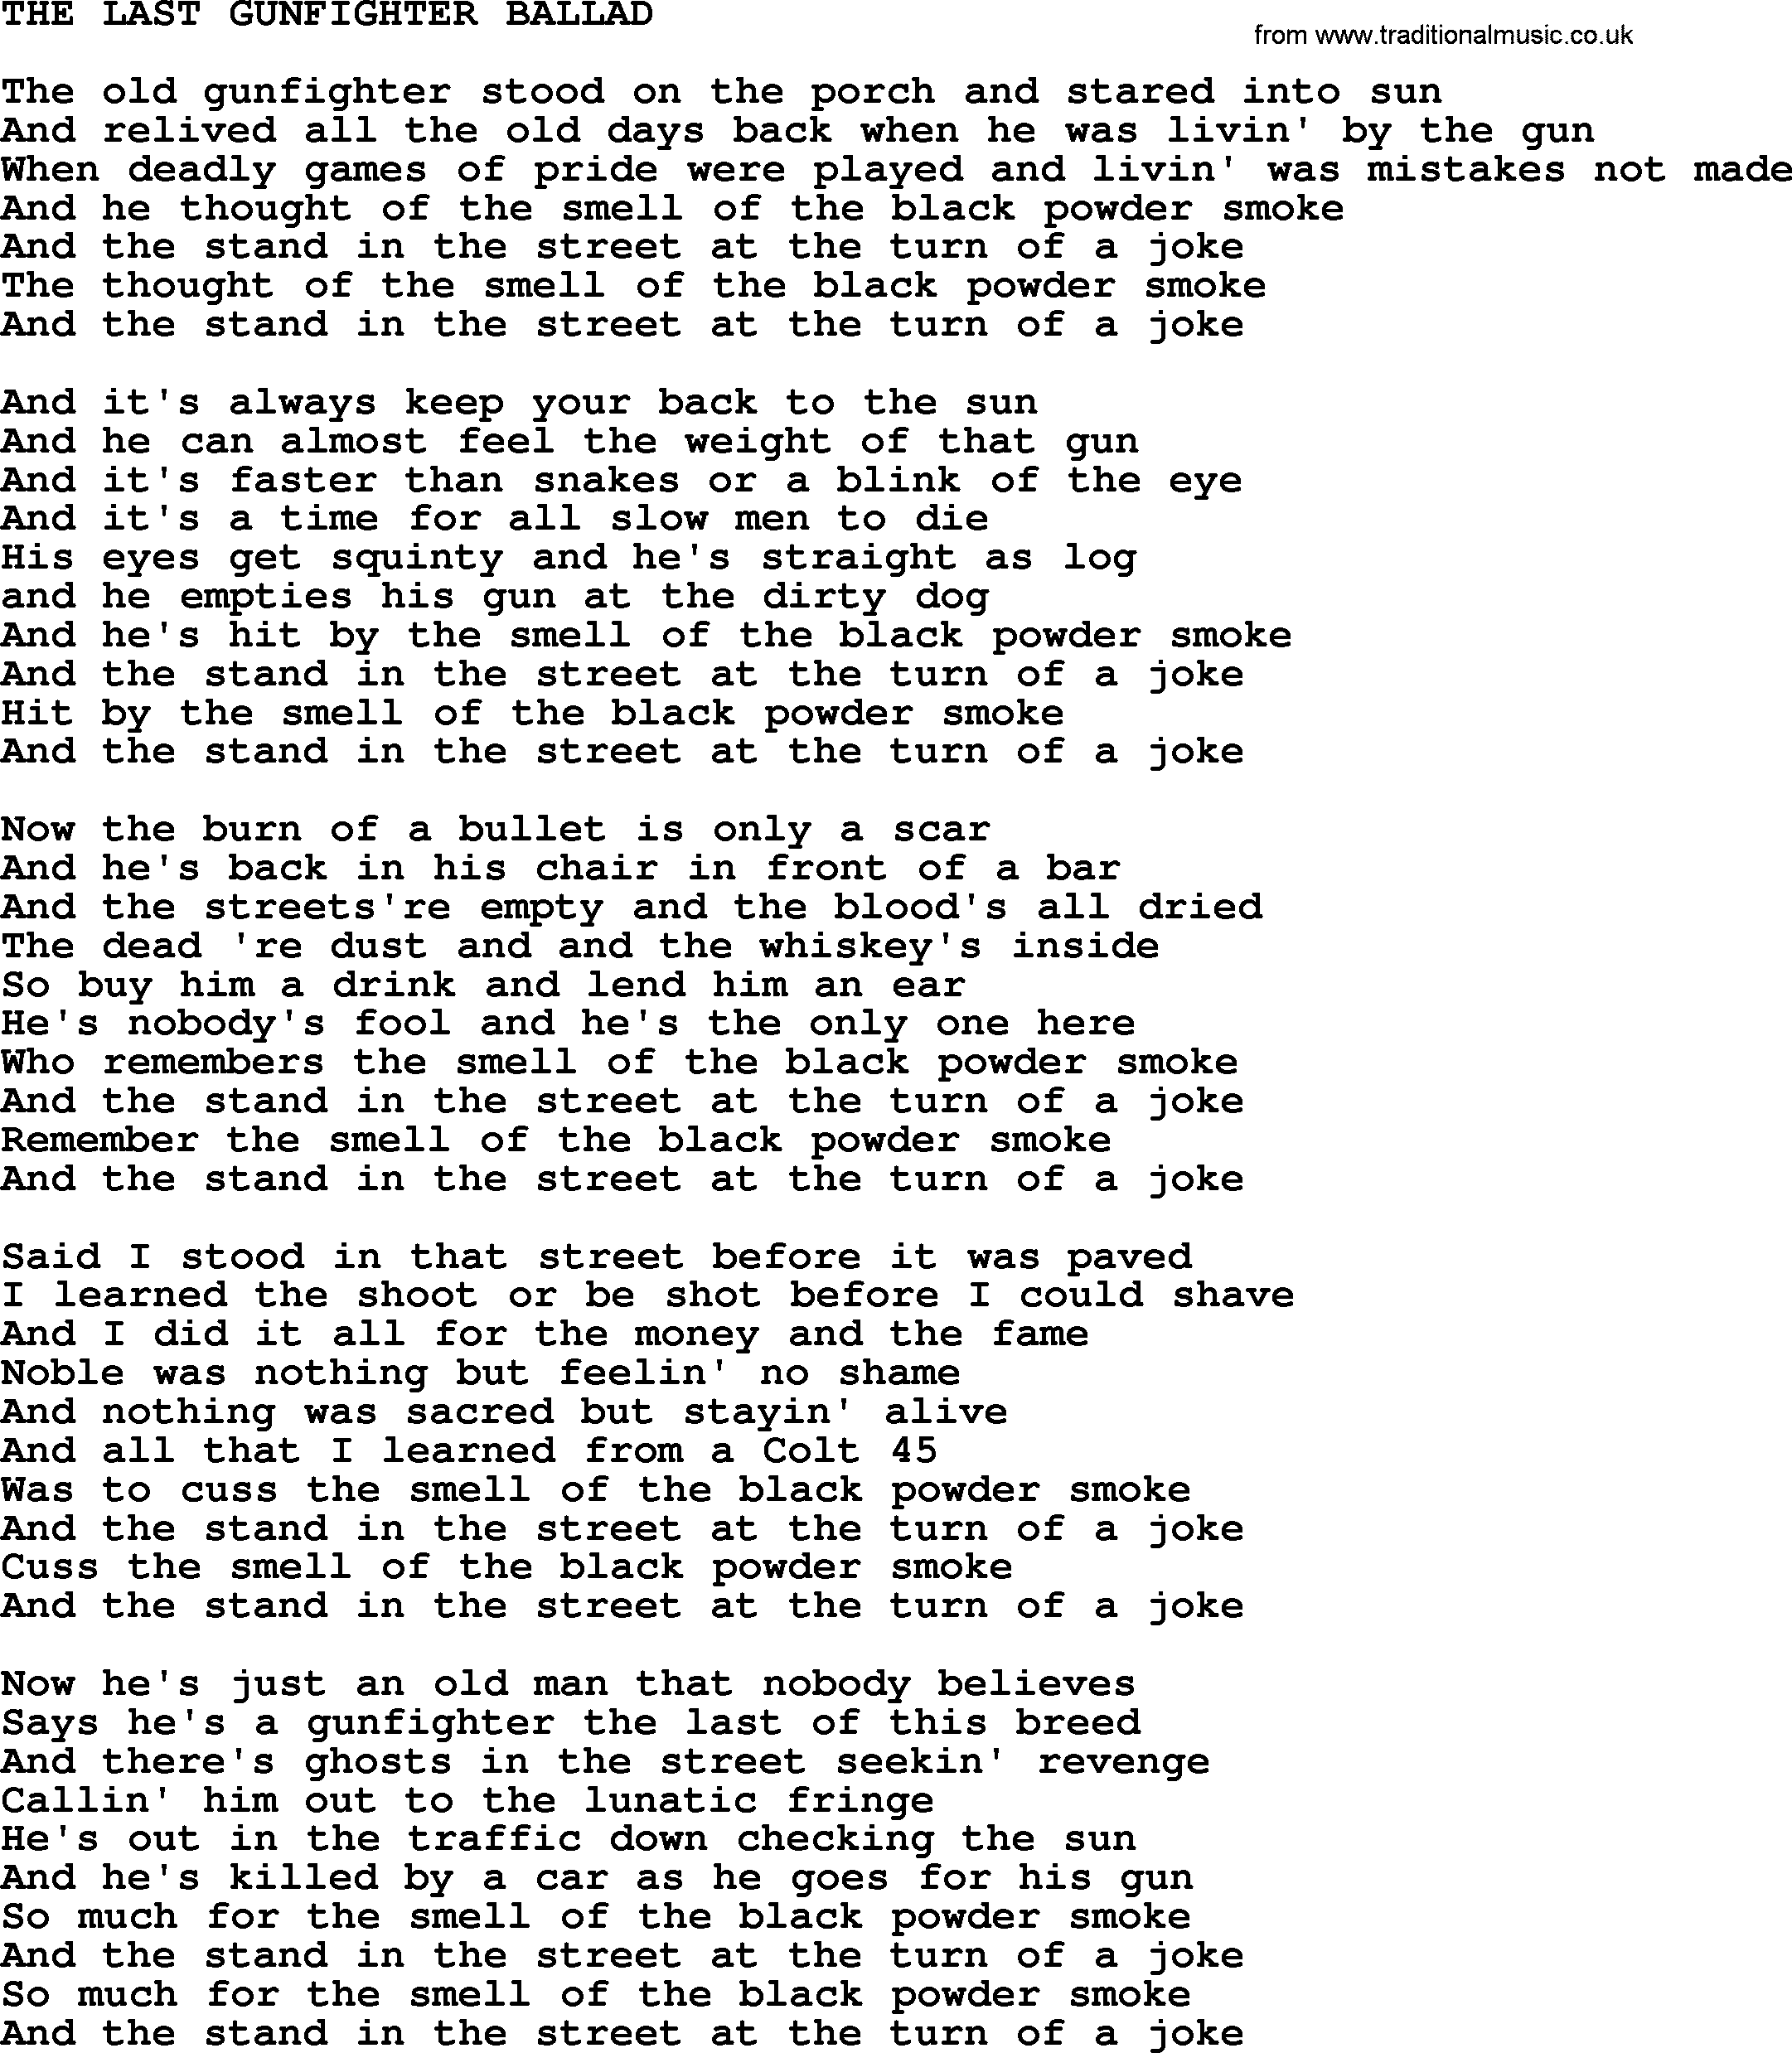 Johnny Cash song The Last Gunfighter Ballad.txt lyrics